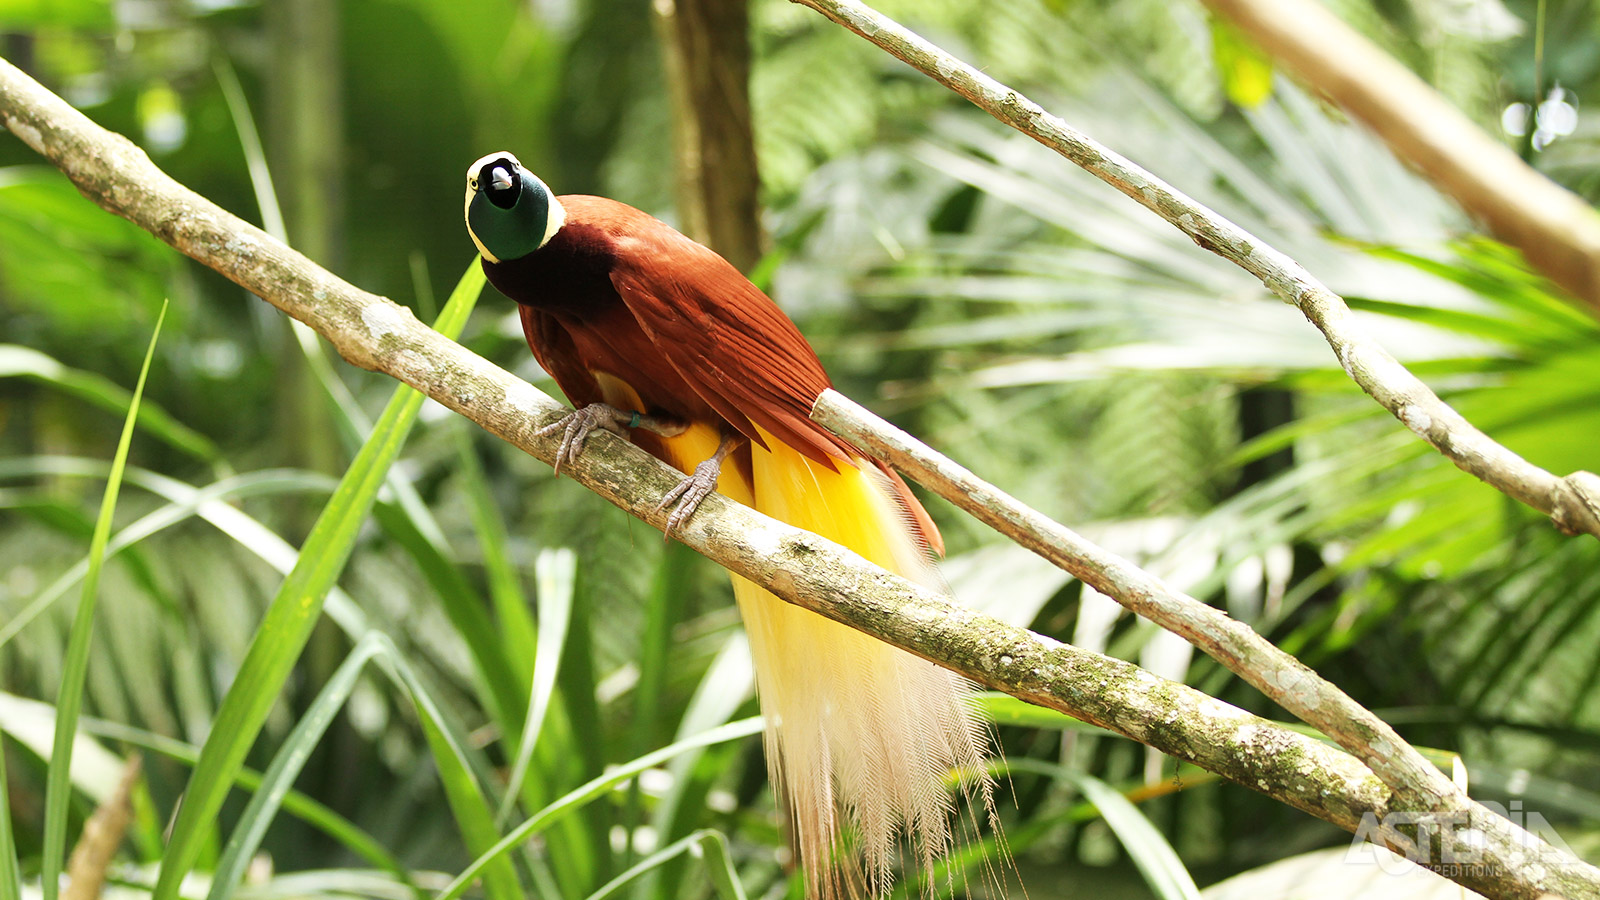 Eén van de verschillende soorten paradijsvogels die voorkomen in Papoea-Nieuw-Guinea